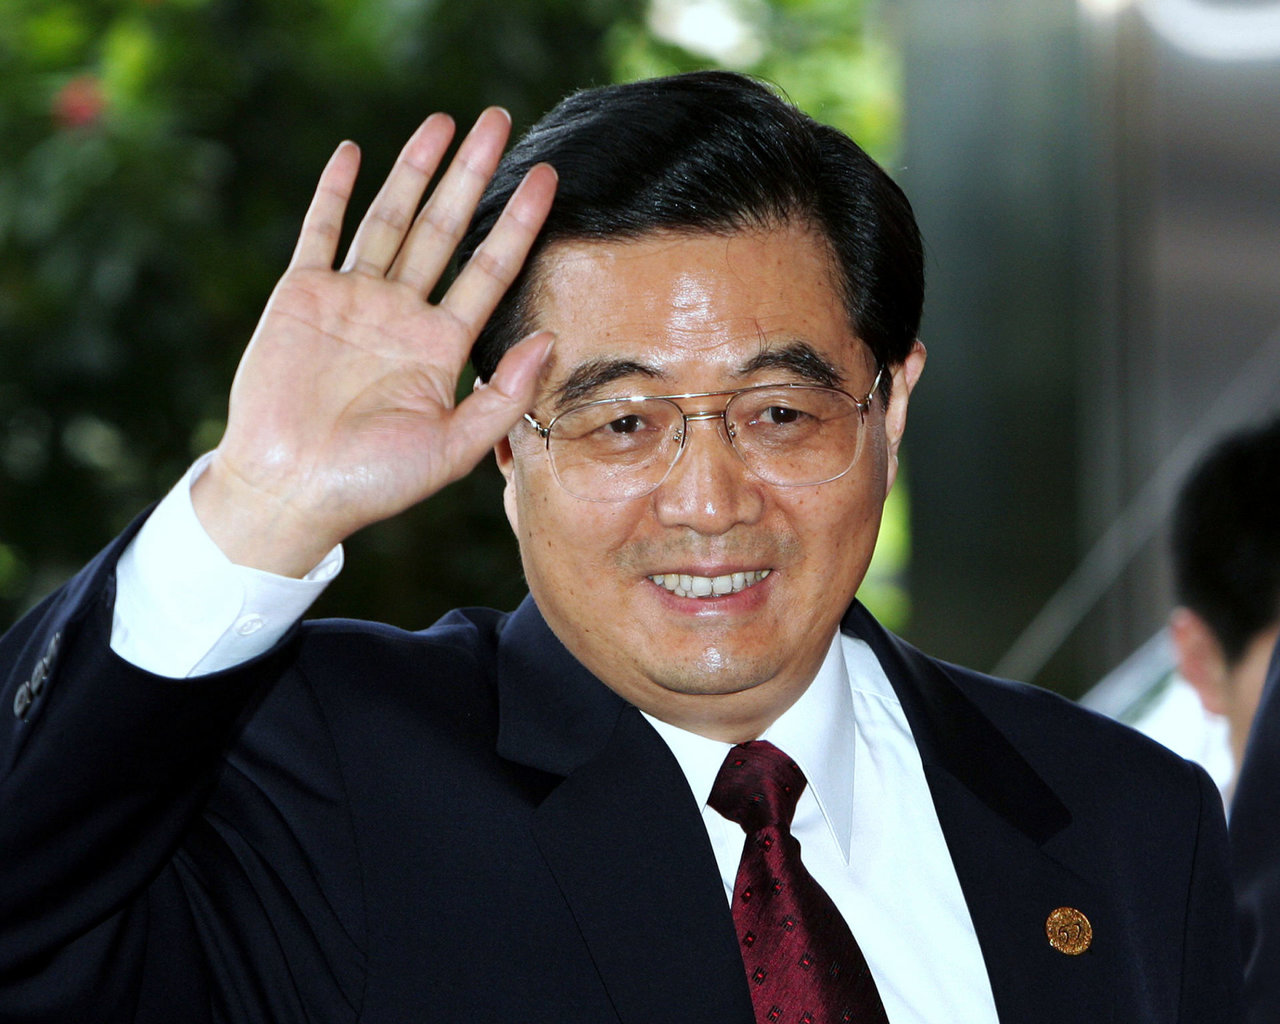 Buvęs Kinijos vadovas Hu Jintao paliko partijos suvažiavimą, nes „nesijautė gerai“